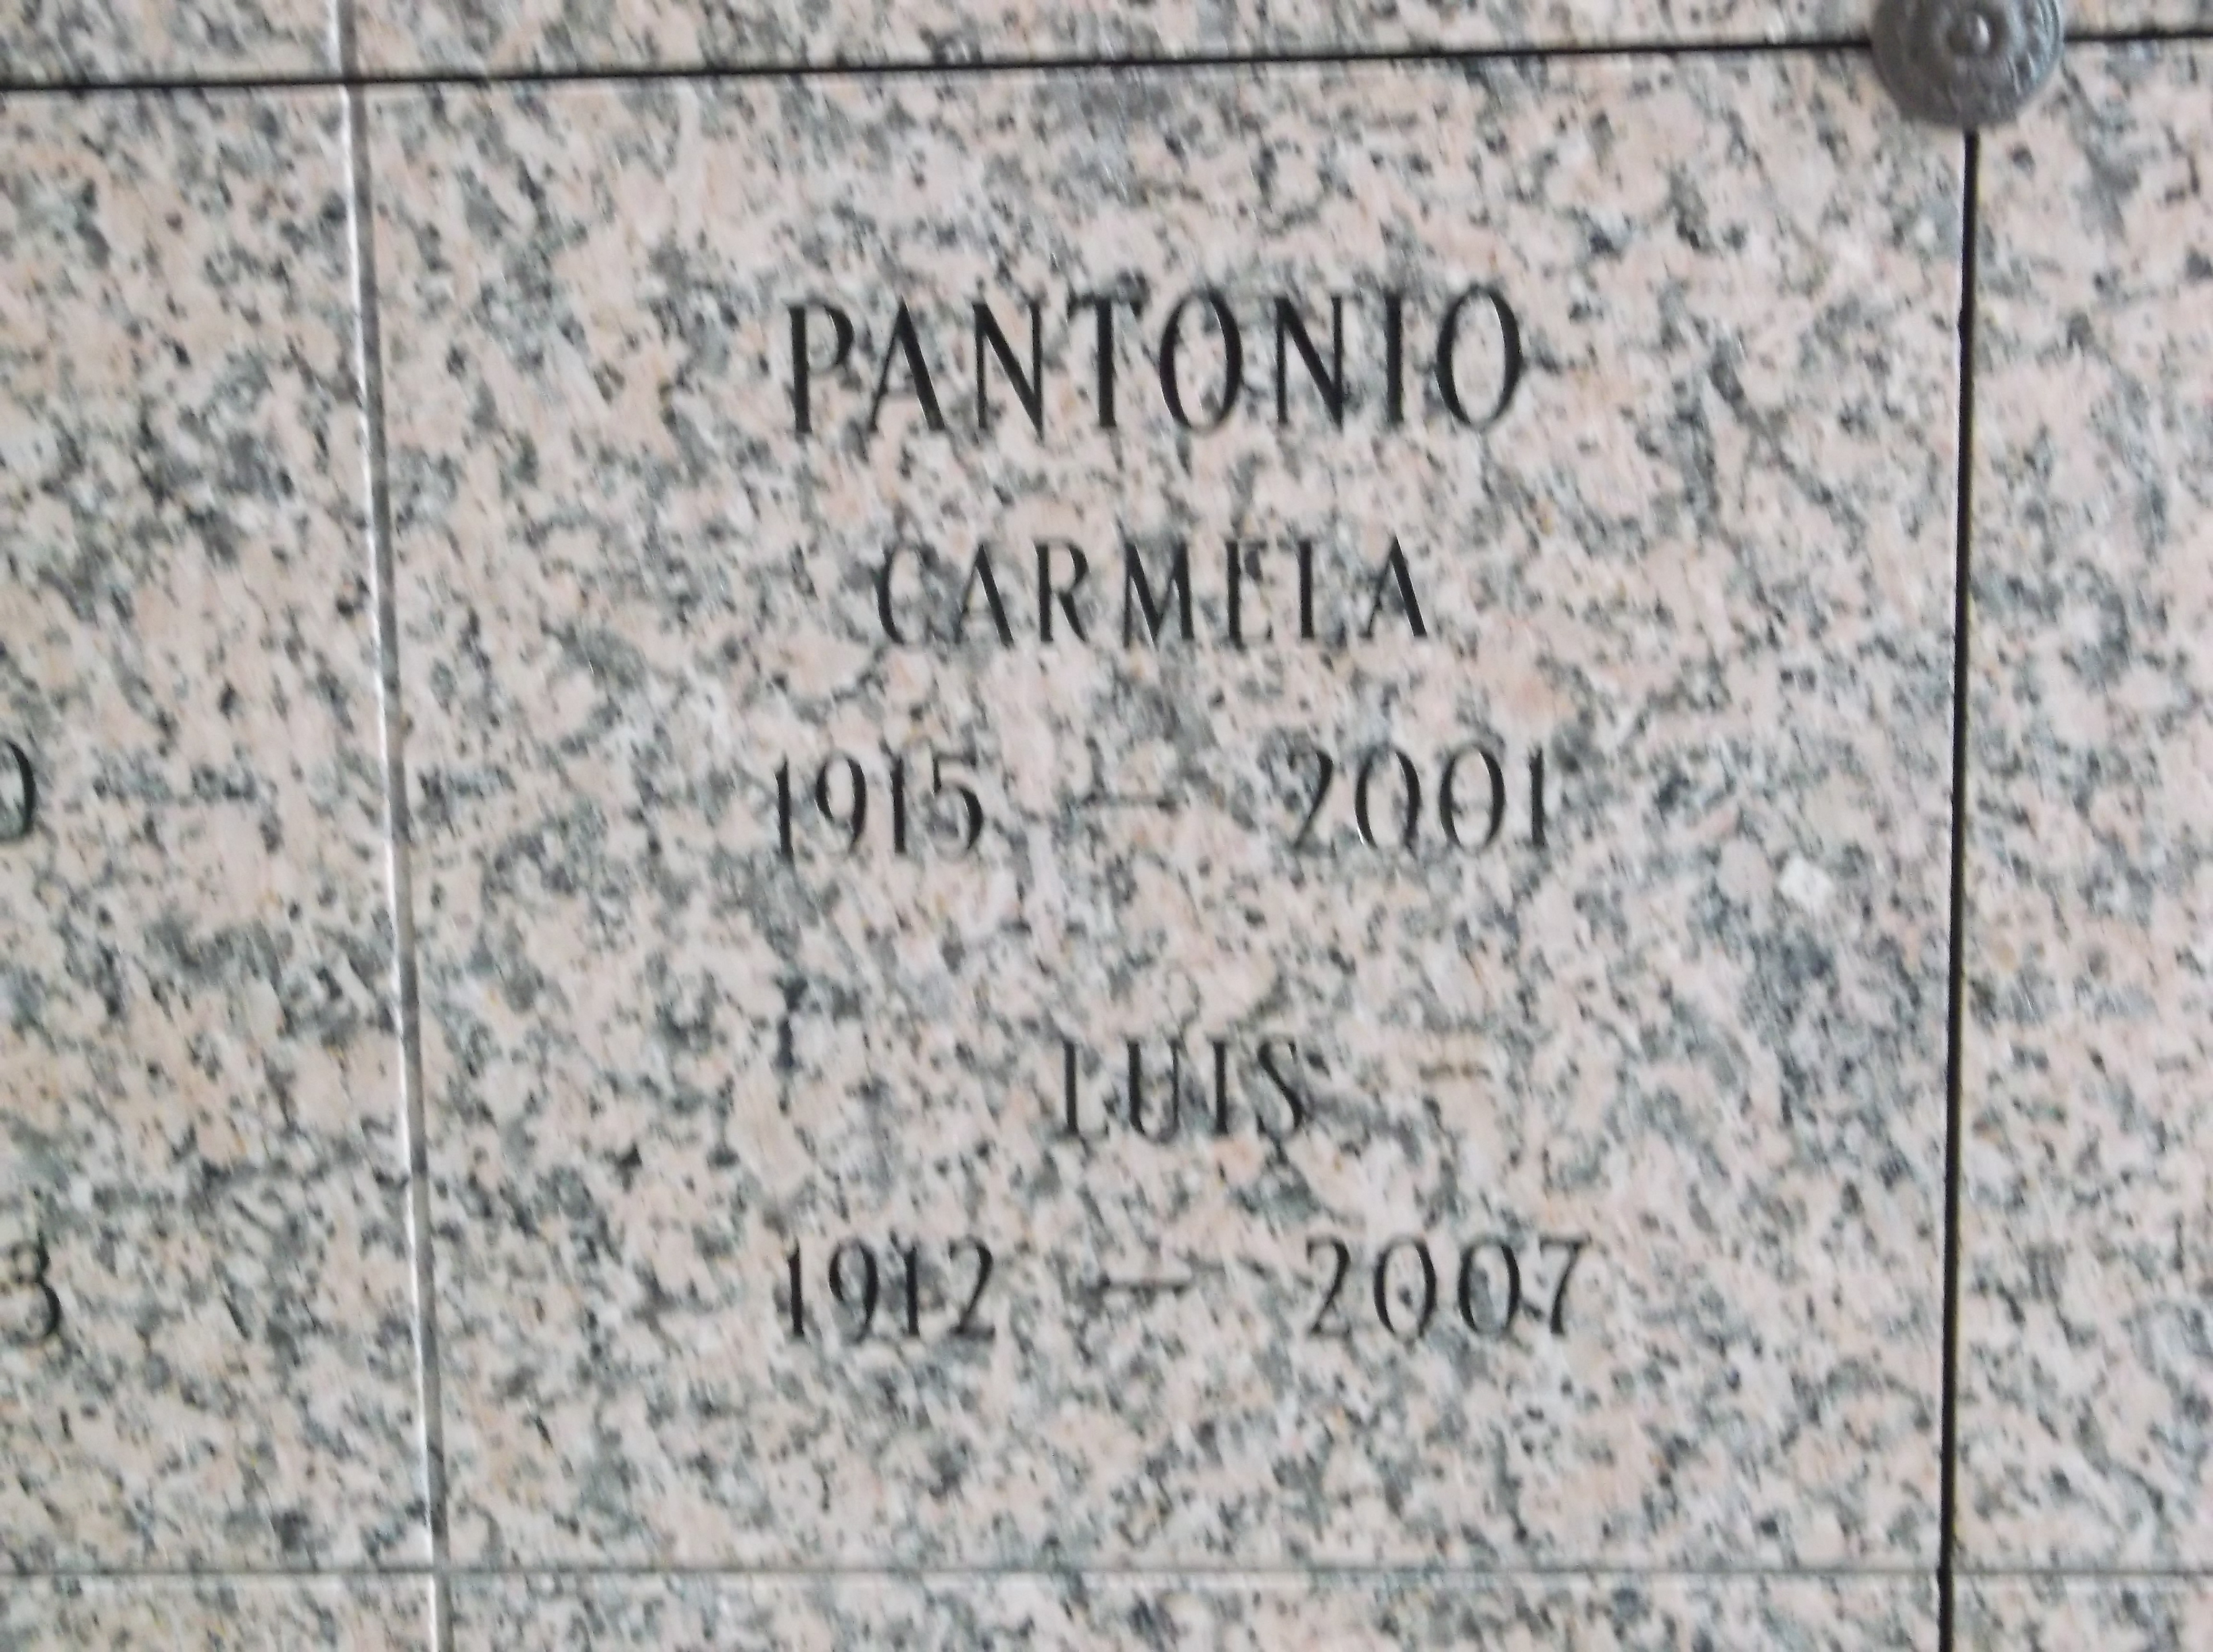 Luis Pantonio